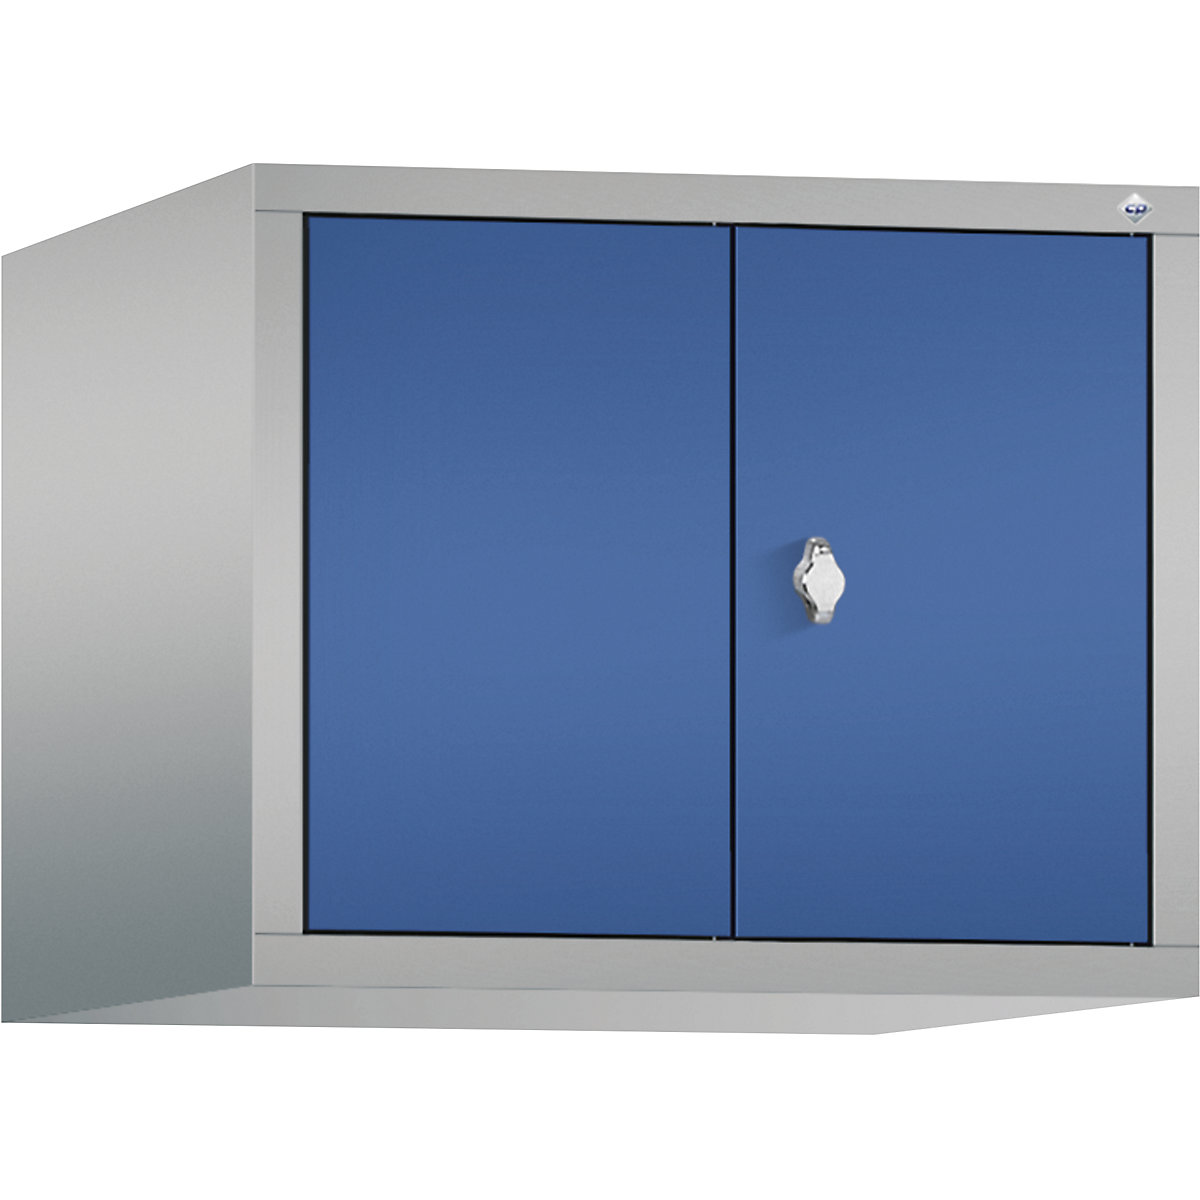 C+P – Dogradni ormar CLASSIC, vrata koja se zatvaraju jedna prema drugima, 2 odjela, širina odjela 300 mm, u aluminij bijeloj / encijan plavoj boji